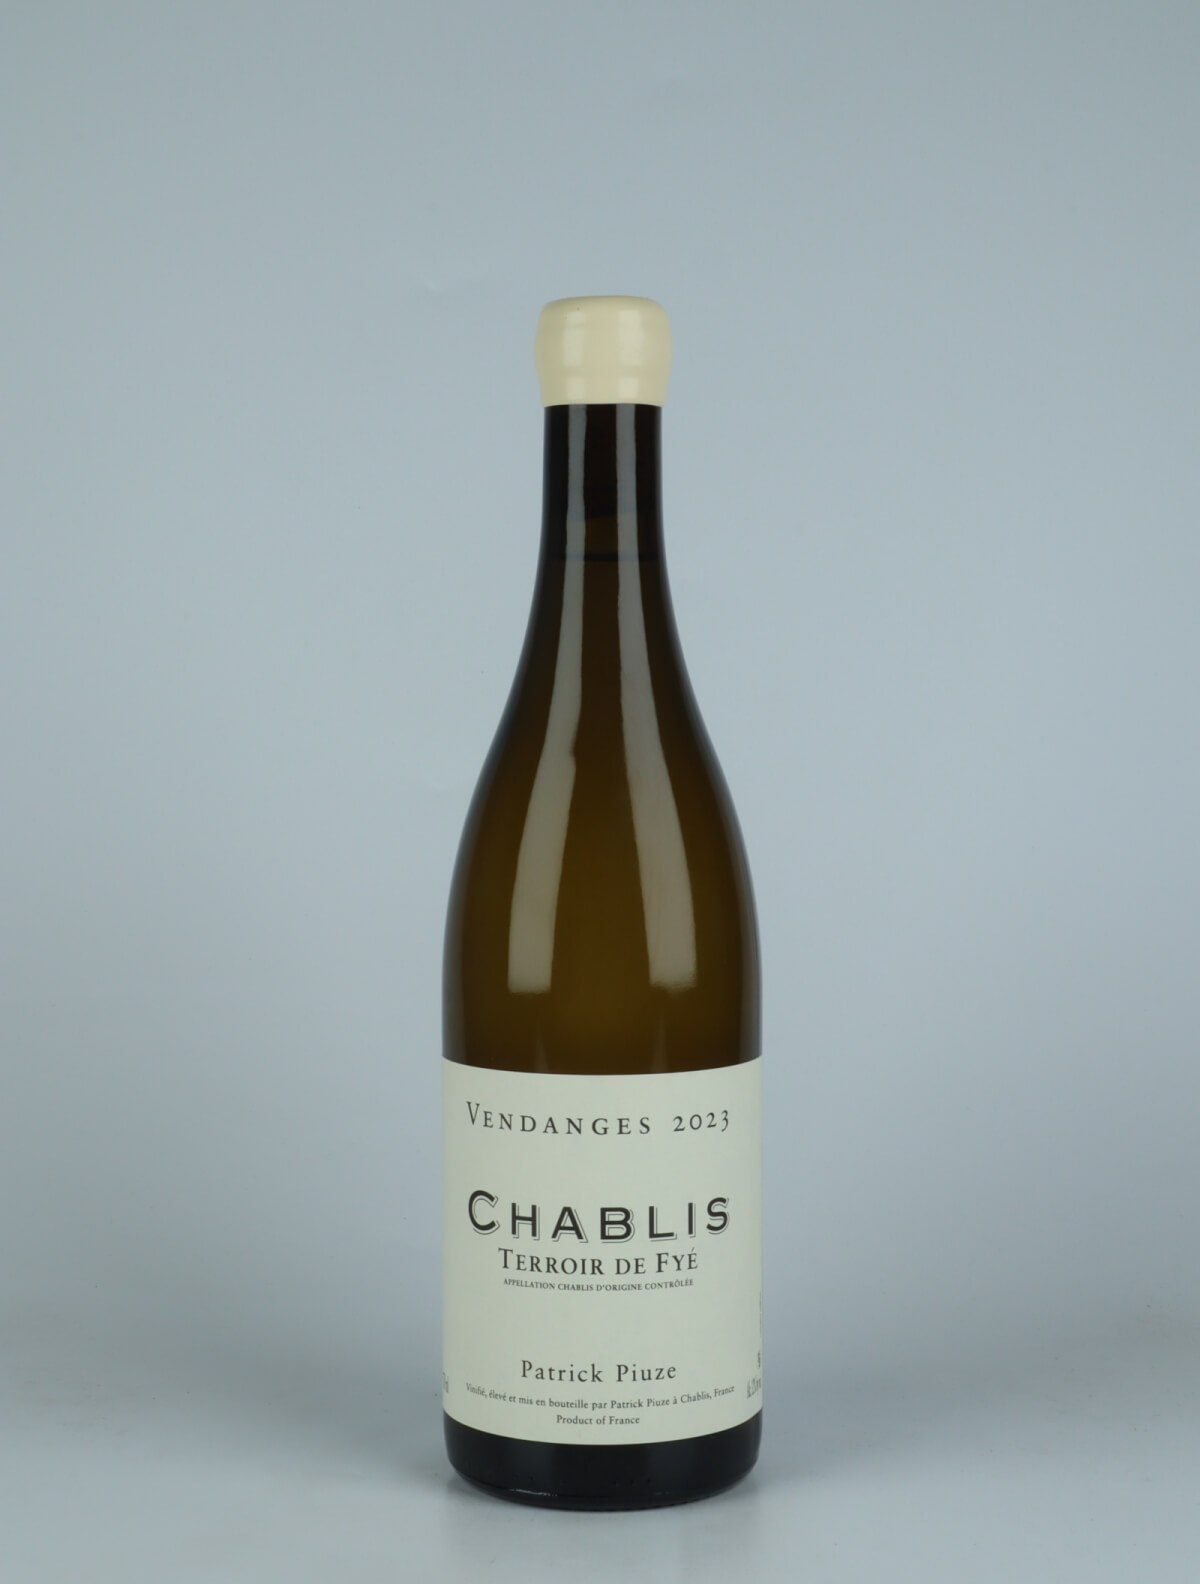 A bottle 2023 Chablis - Terroir de Fyé White wine from Patrick Piuze, Burgundy in France